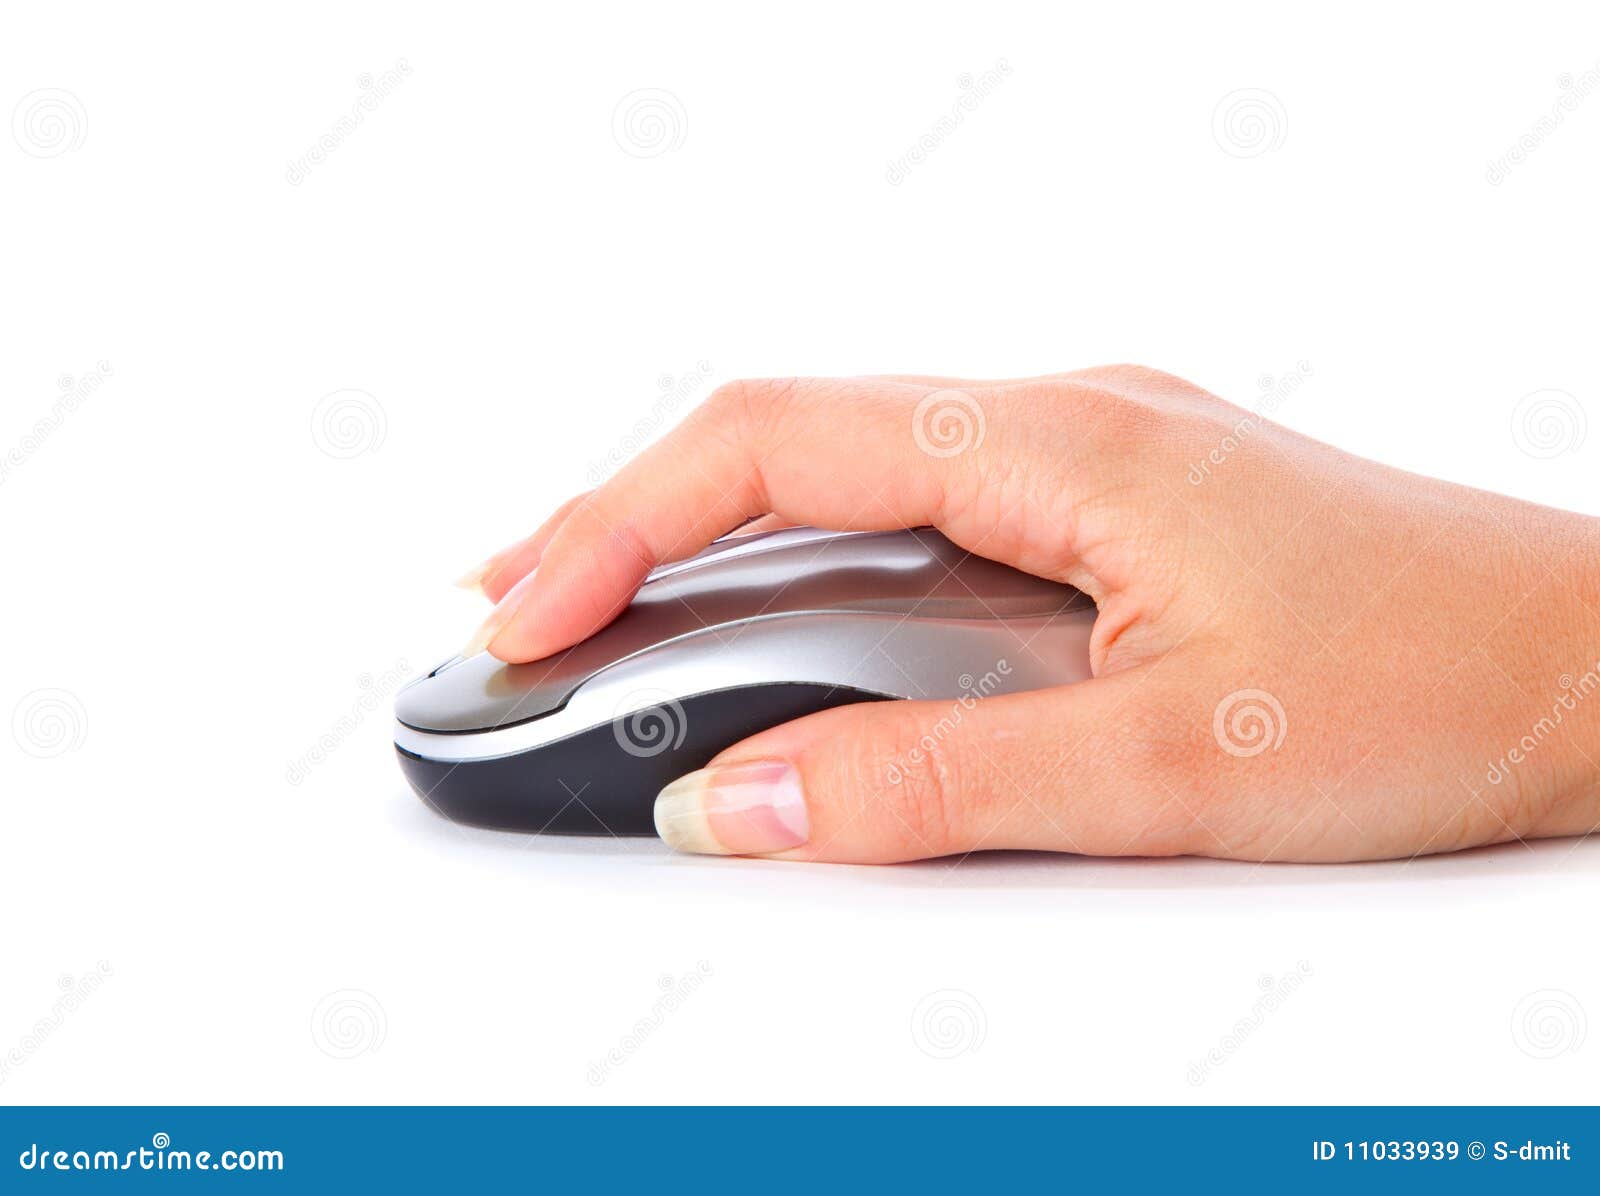 Avondeten Vaardigheid zeewier Hand with computer mouse stock image. Image of clicked - 11033939